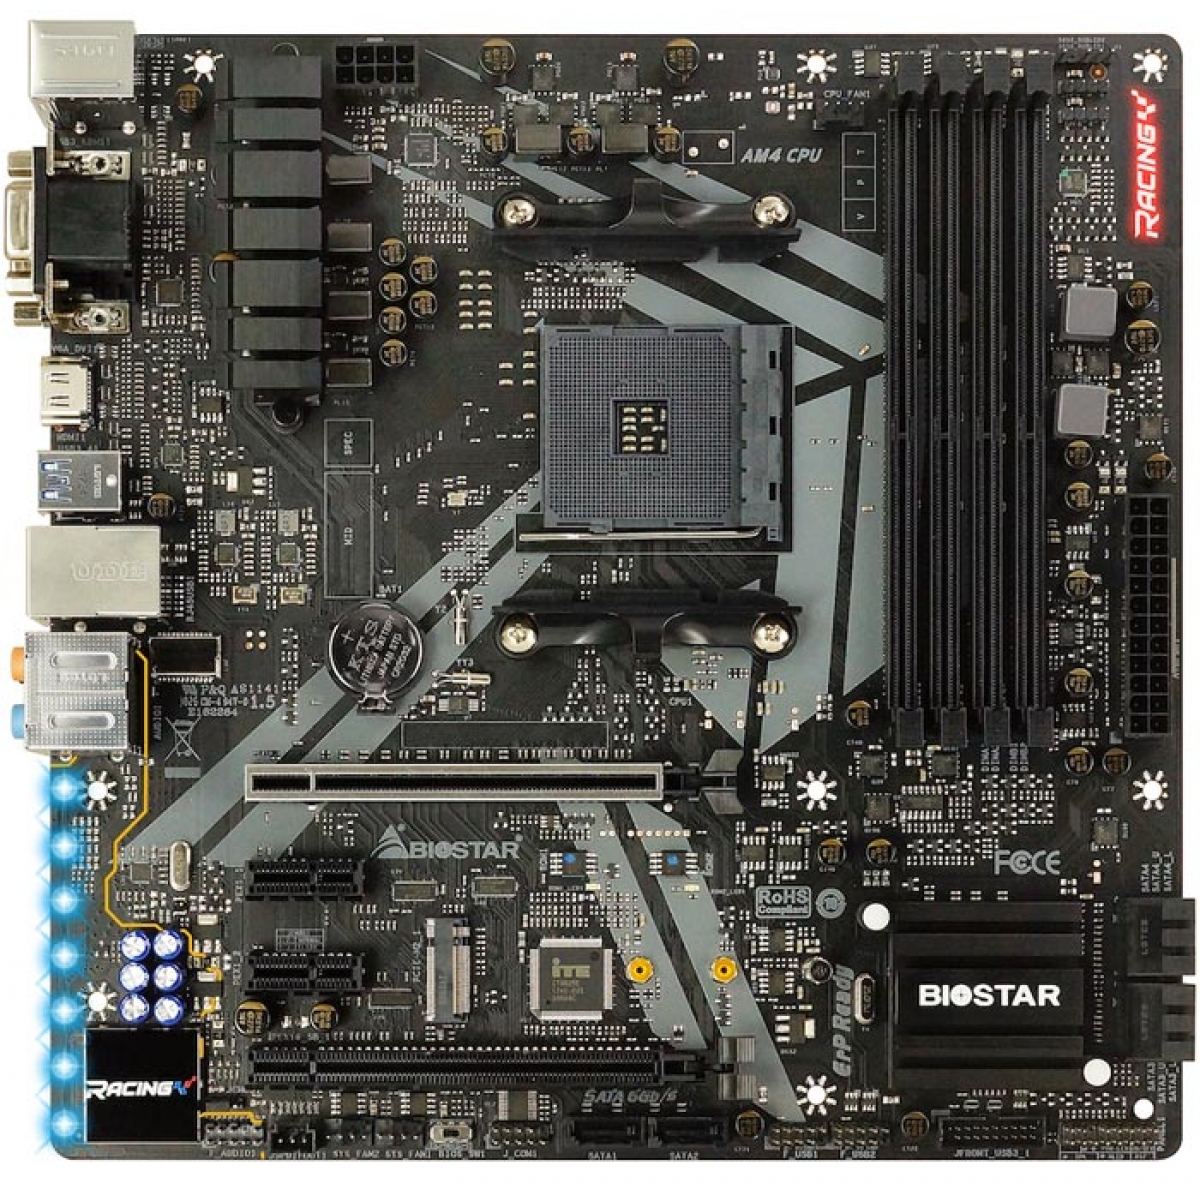 Placa Mãe Biostar Racing B450GT3, Chipset B450, AMD AM4, mATX, DDR4 - Open Box